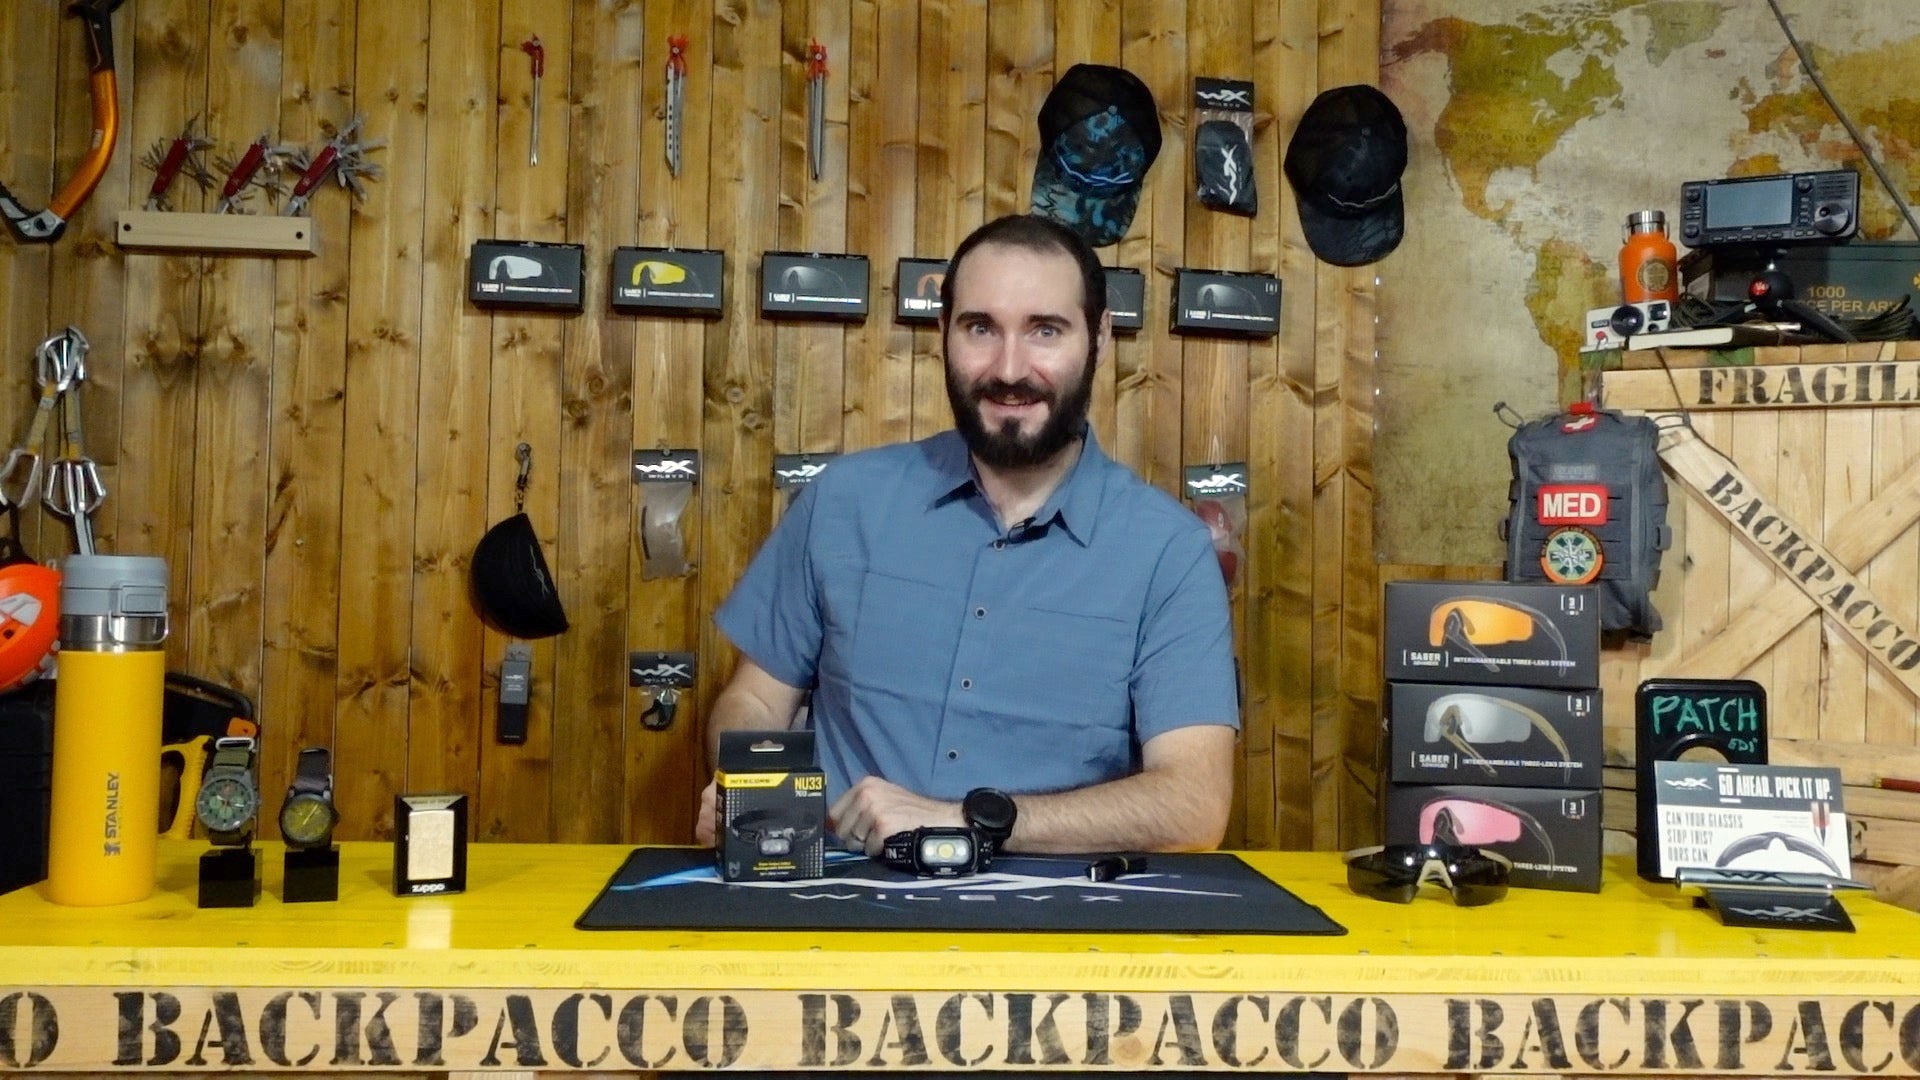 Paolo di Backpacco spiega la nitecore nu33